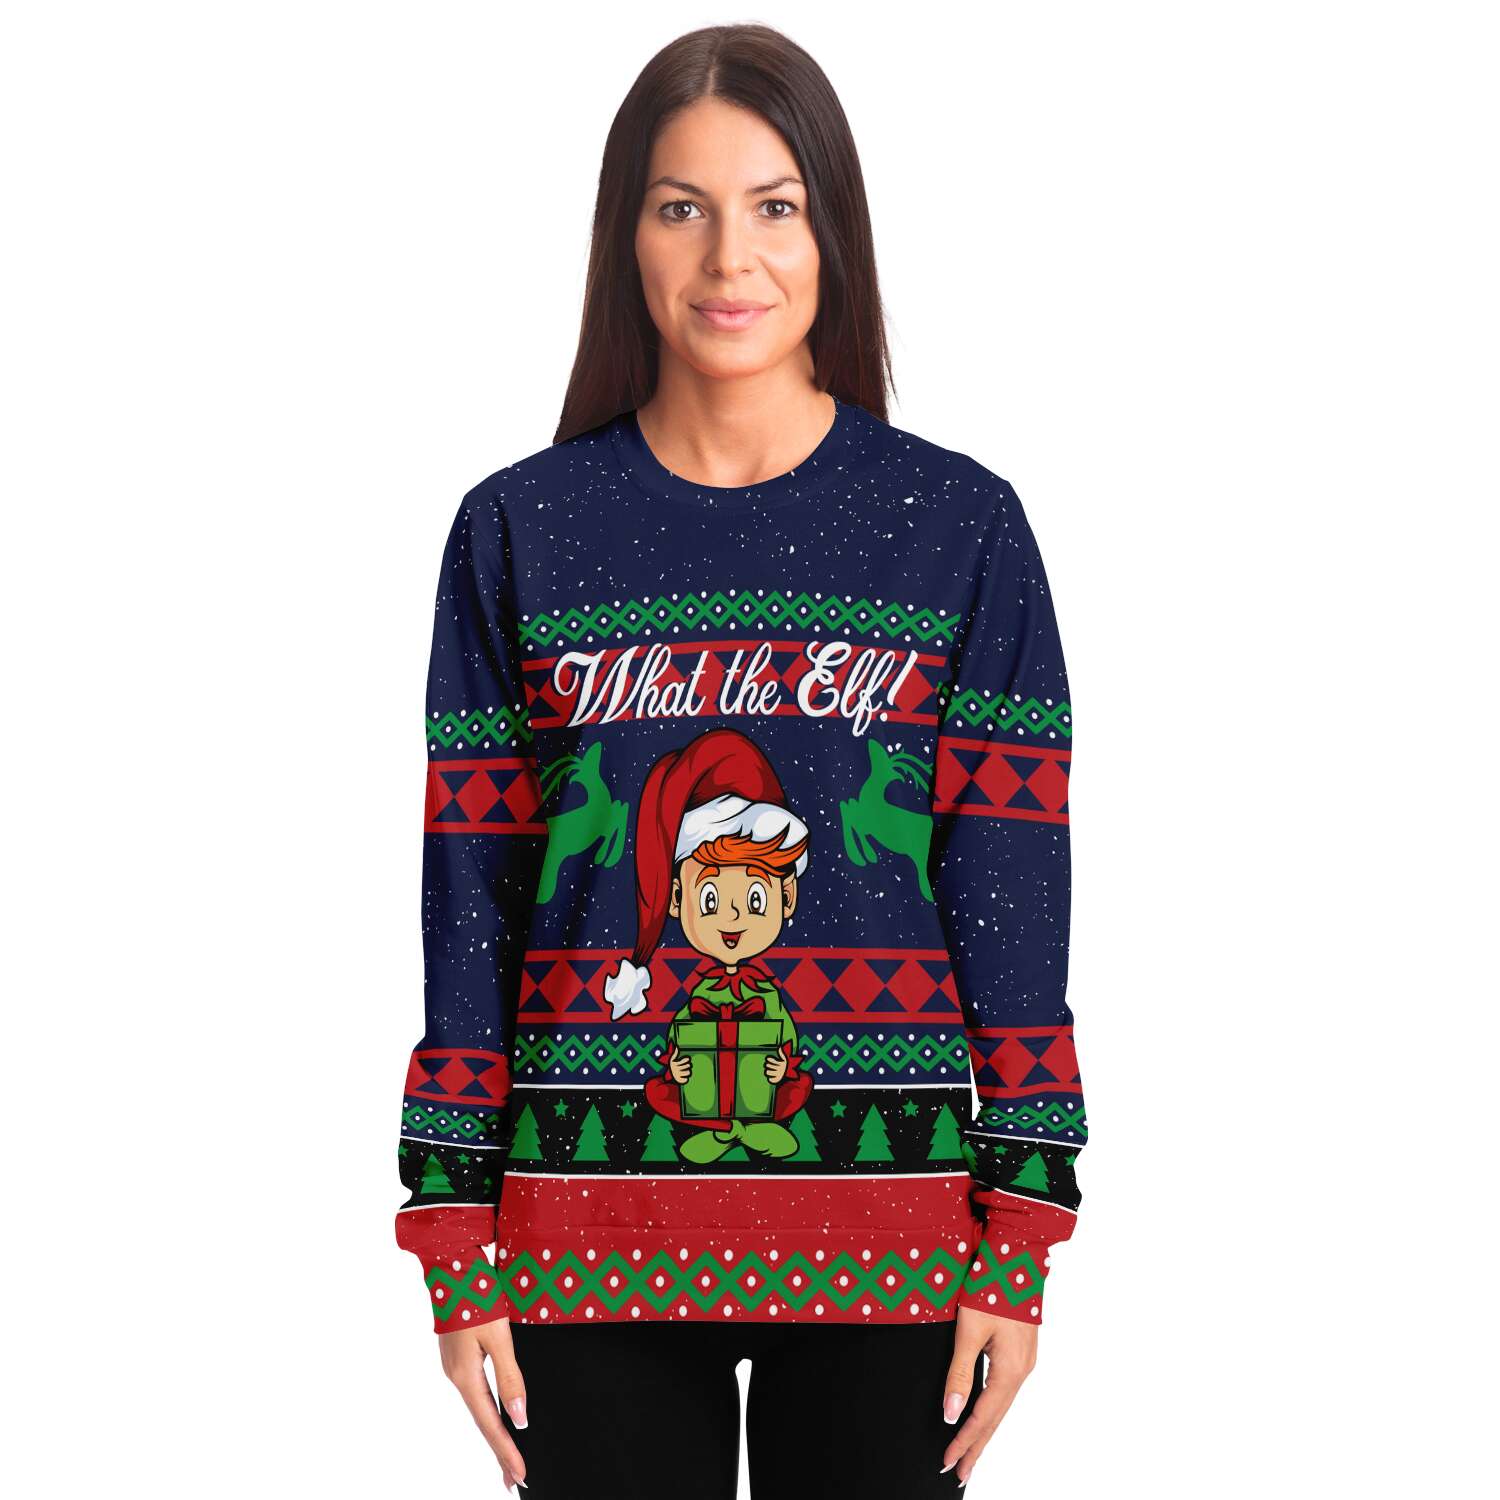 What the Elf Sweatshirt | Unisex Ugly Christmas Sweater, Xmas Sweater, Holiday Sweater, Festive Sweater, Funny Sweater, Funny Party Shirt